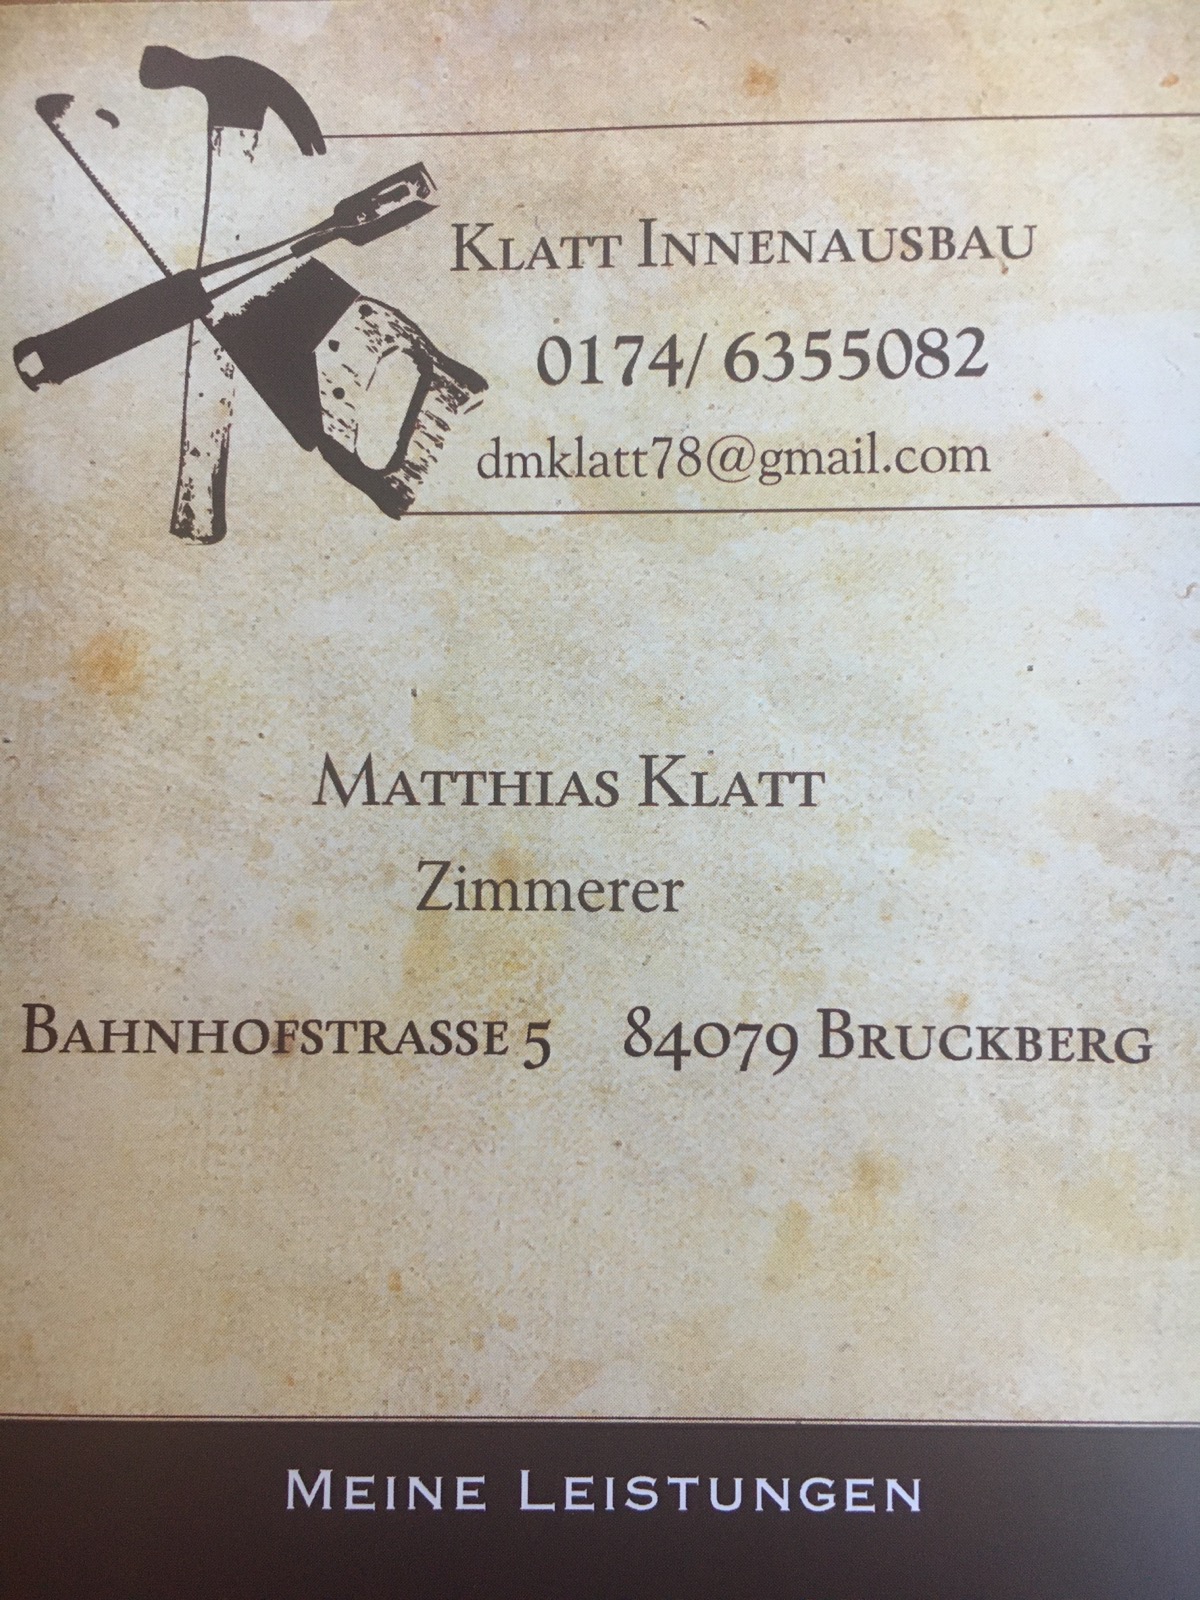 Matthias Klatt Logo